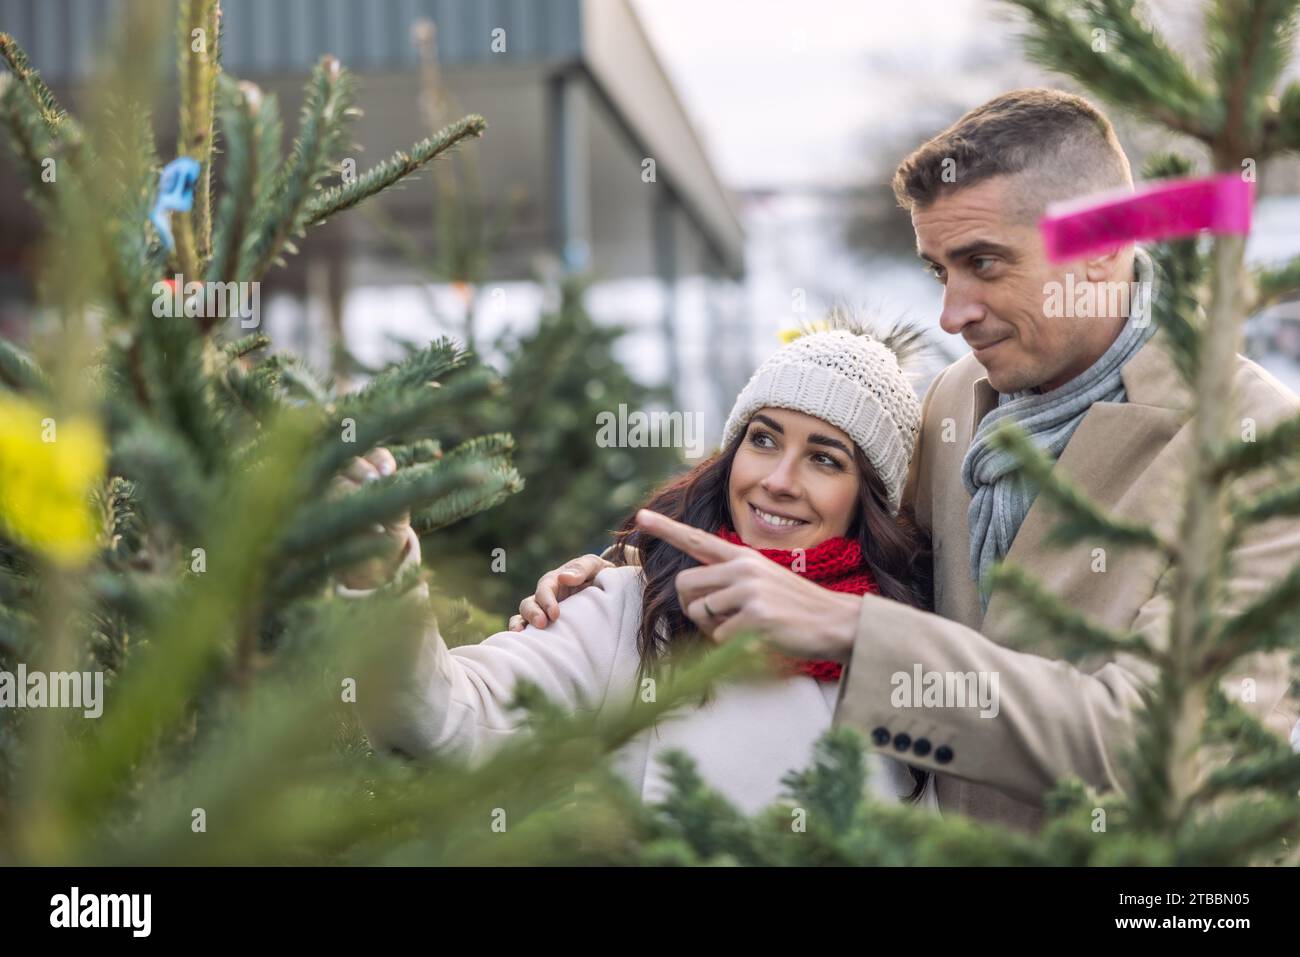 Un couple heureux achète un sapin de Noël au marché, importé des pays nordiques. Un couple choisit un arbre dans une ferme d'arbres de Noël. Banque D'Images